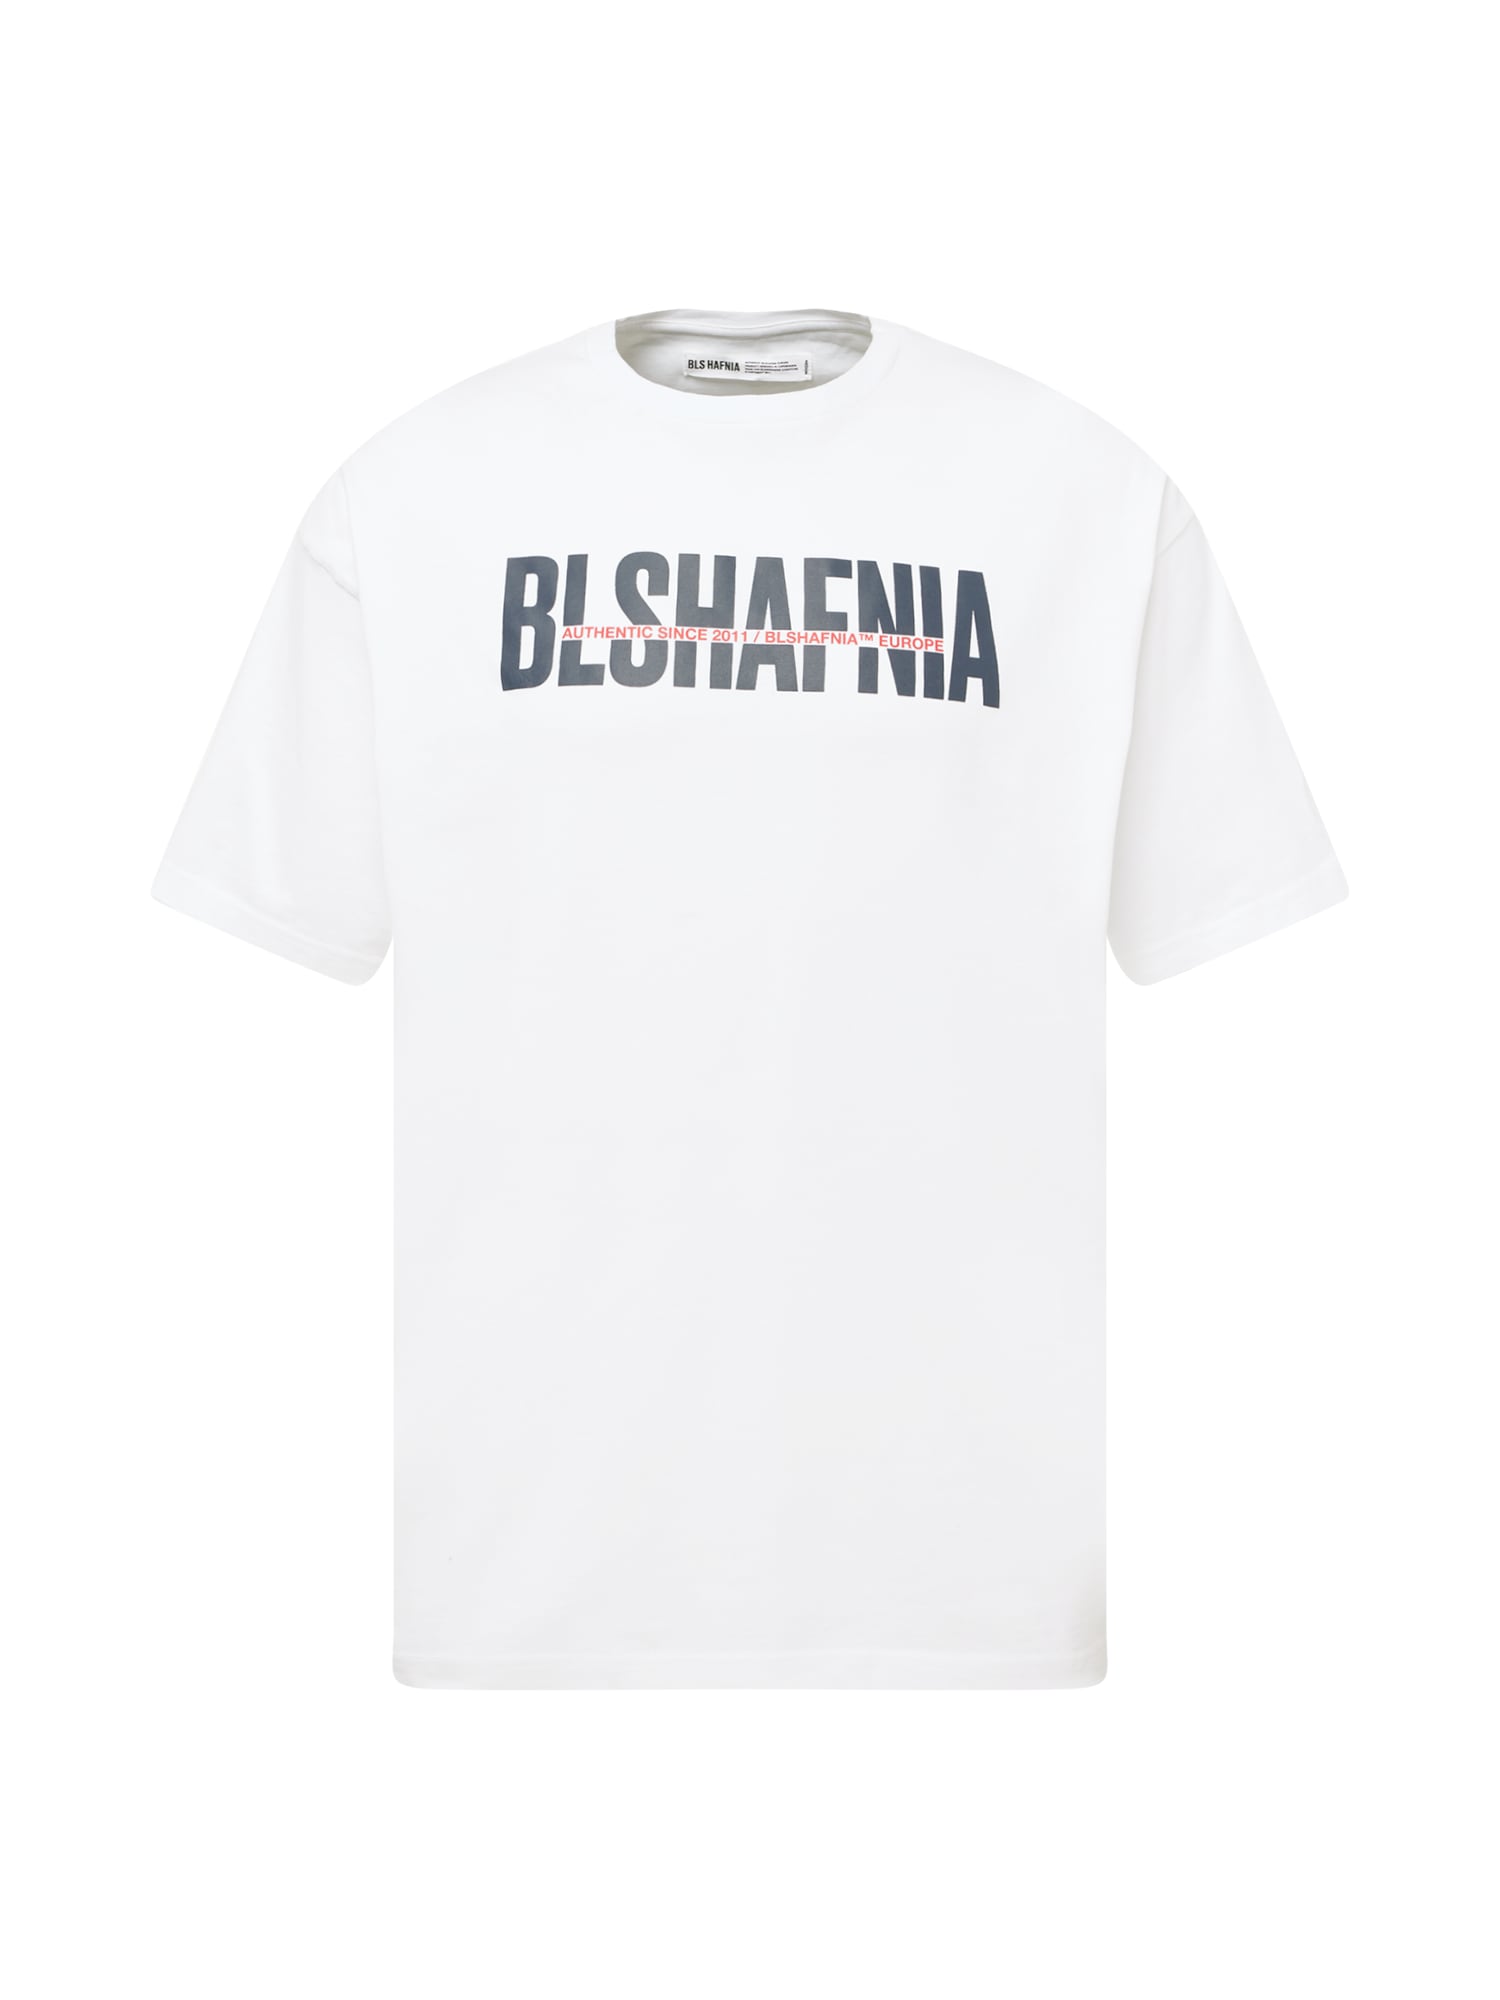 BLS HAFNIA Marškinėliai 'Transparency' raudona / juoda / balta